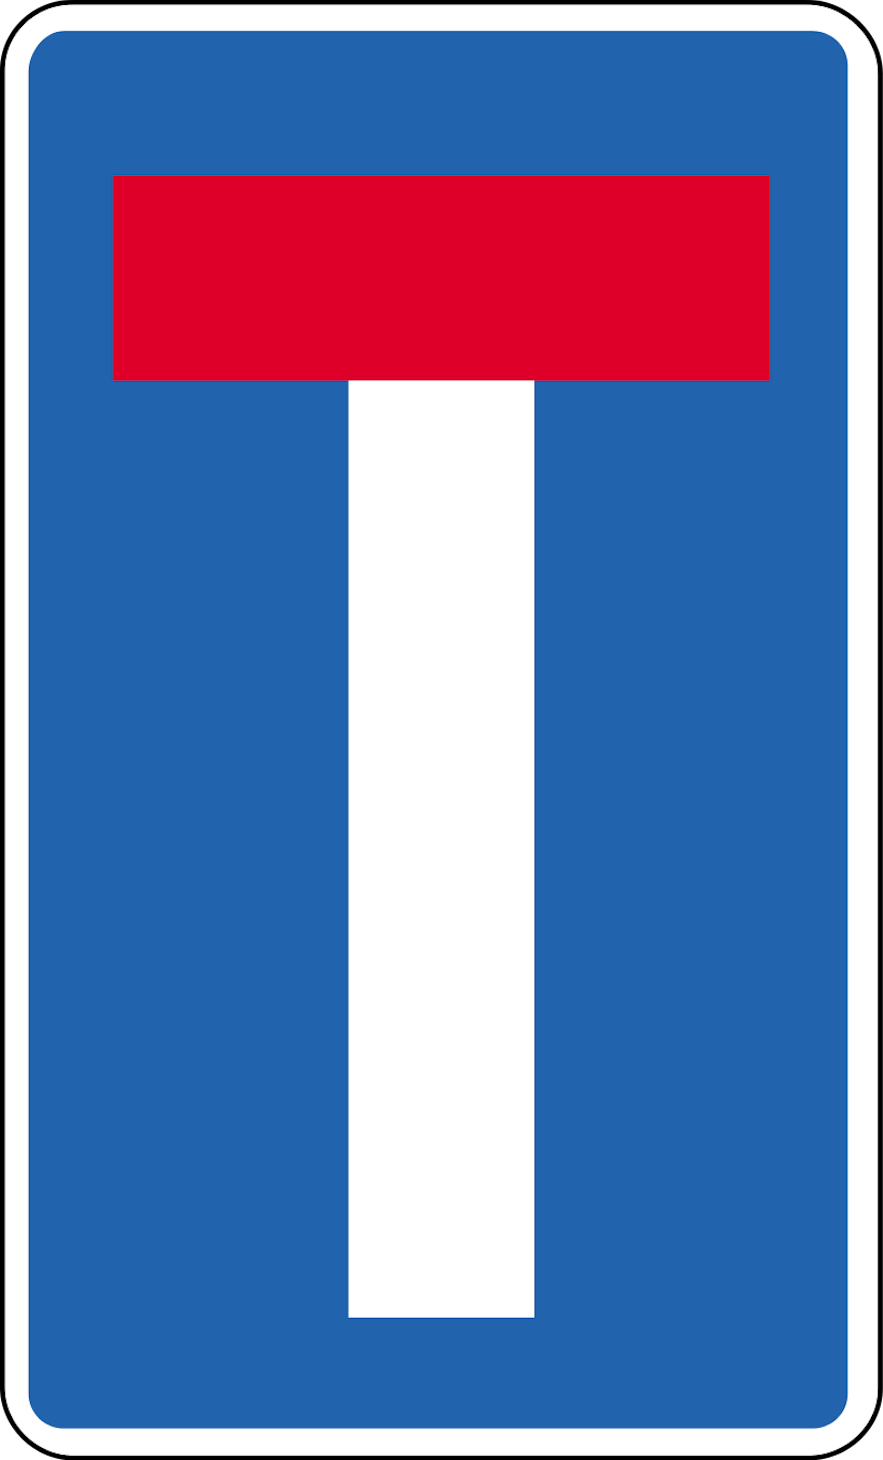 蓝色标志上有一个像大写字母"T"的红白符号，表示此路不通。